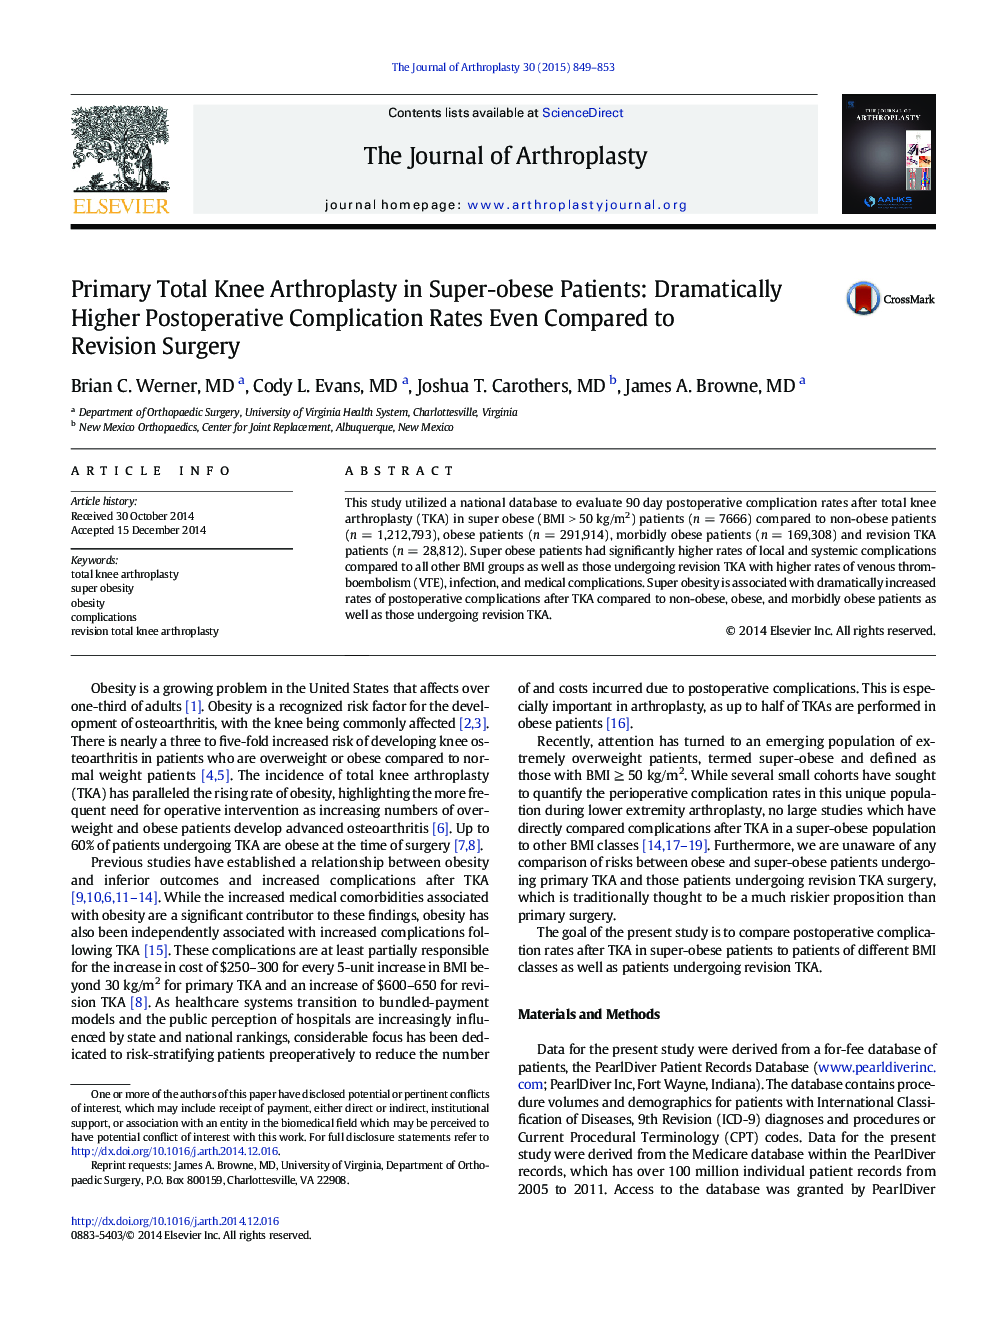 آرتروپلاستی کامل زانو اولیه در بیماران فوق چربی: میزان عوارض بعد از عمل جراحی به میزان قابل توجهی حتی در مقایسه با جراحی بازنگری 